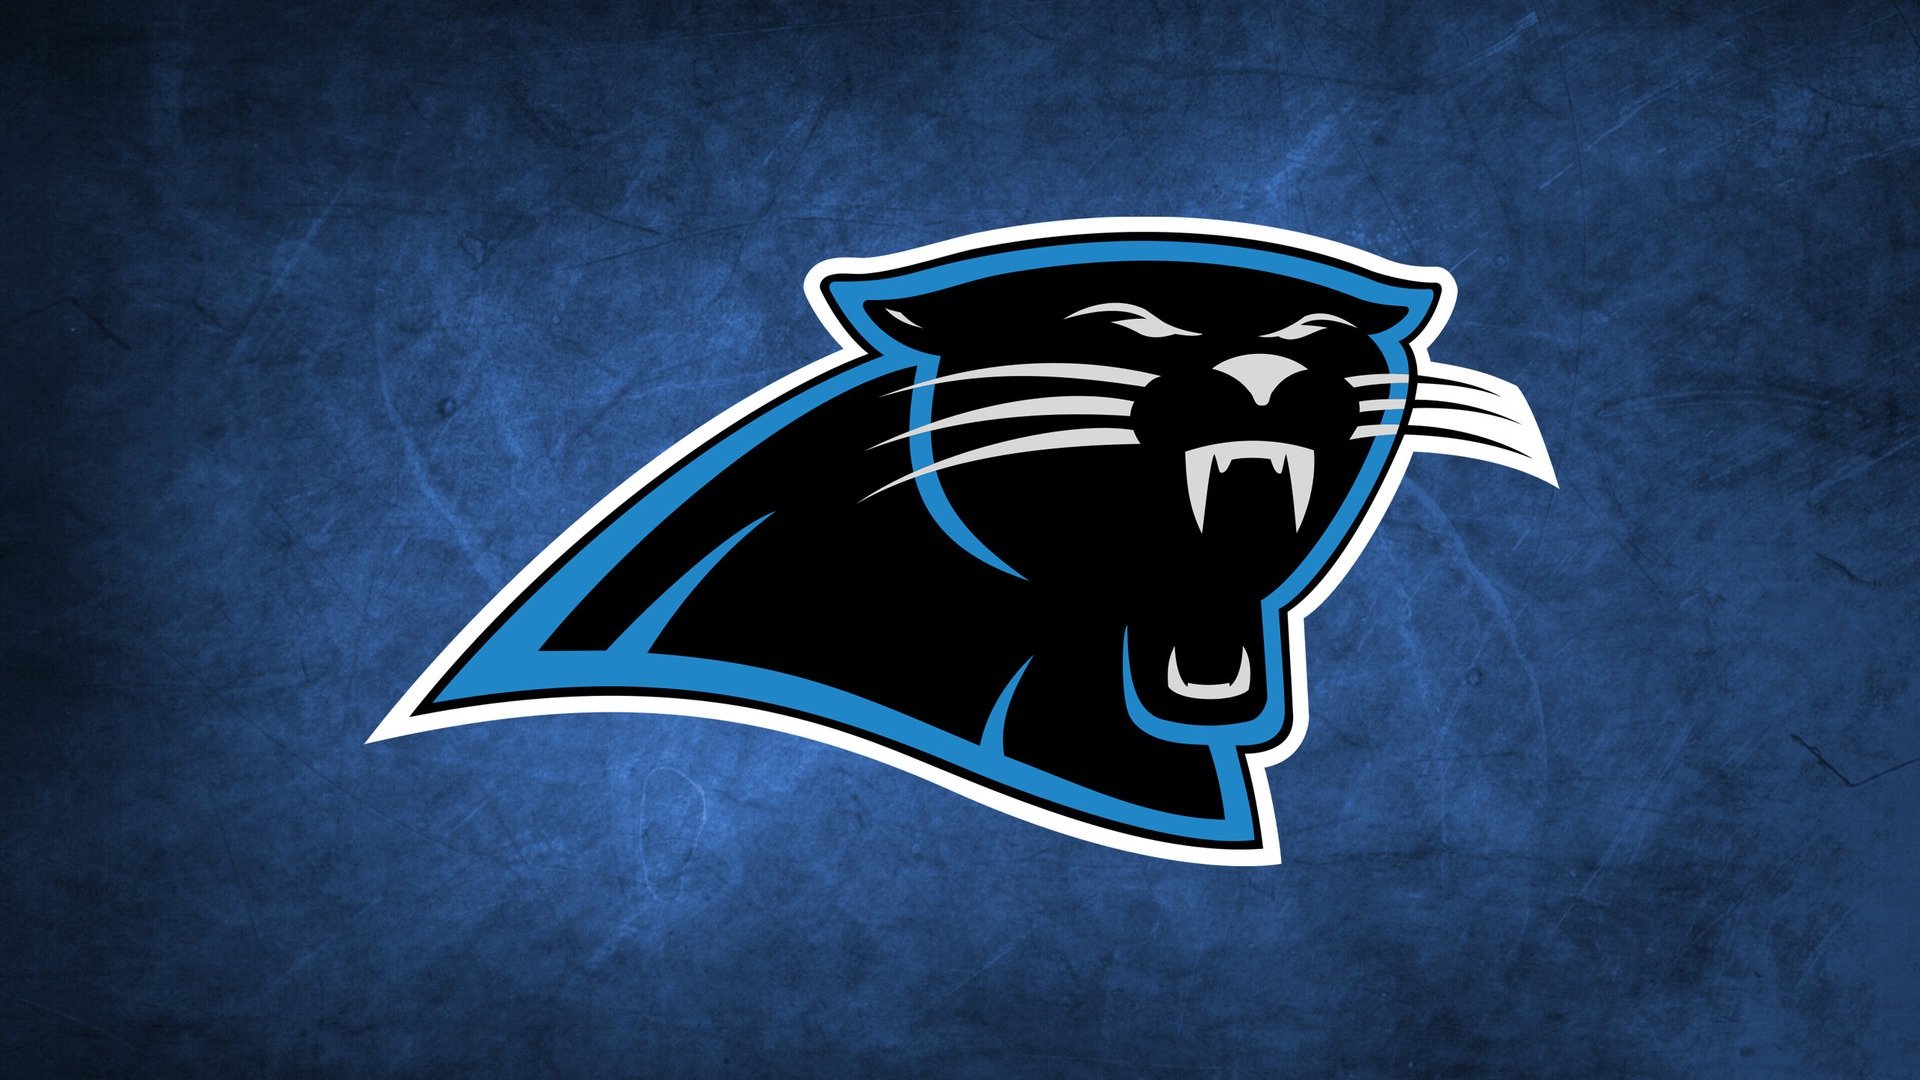 Carolina Panthers Logo Wallpaper Hd Pixelstalknet